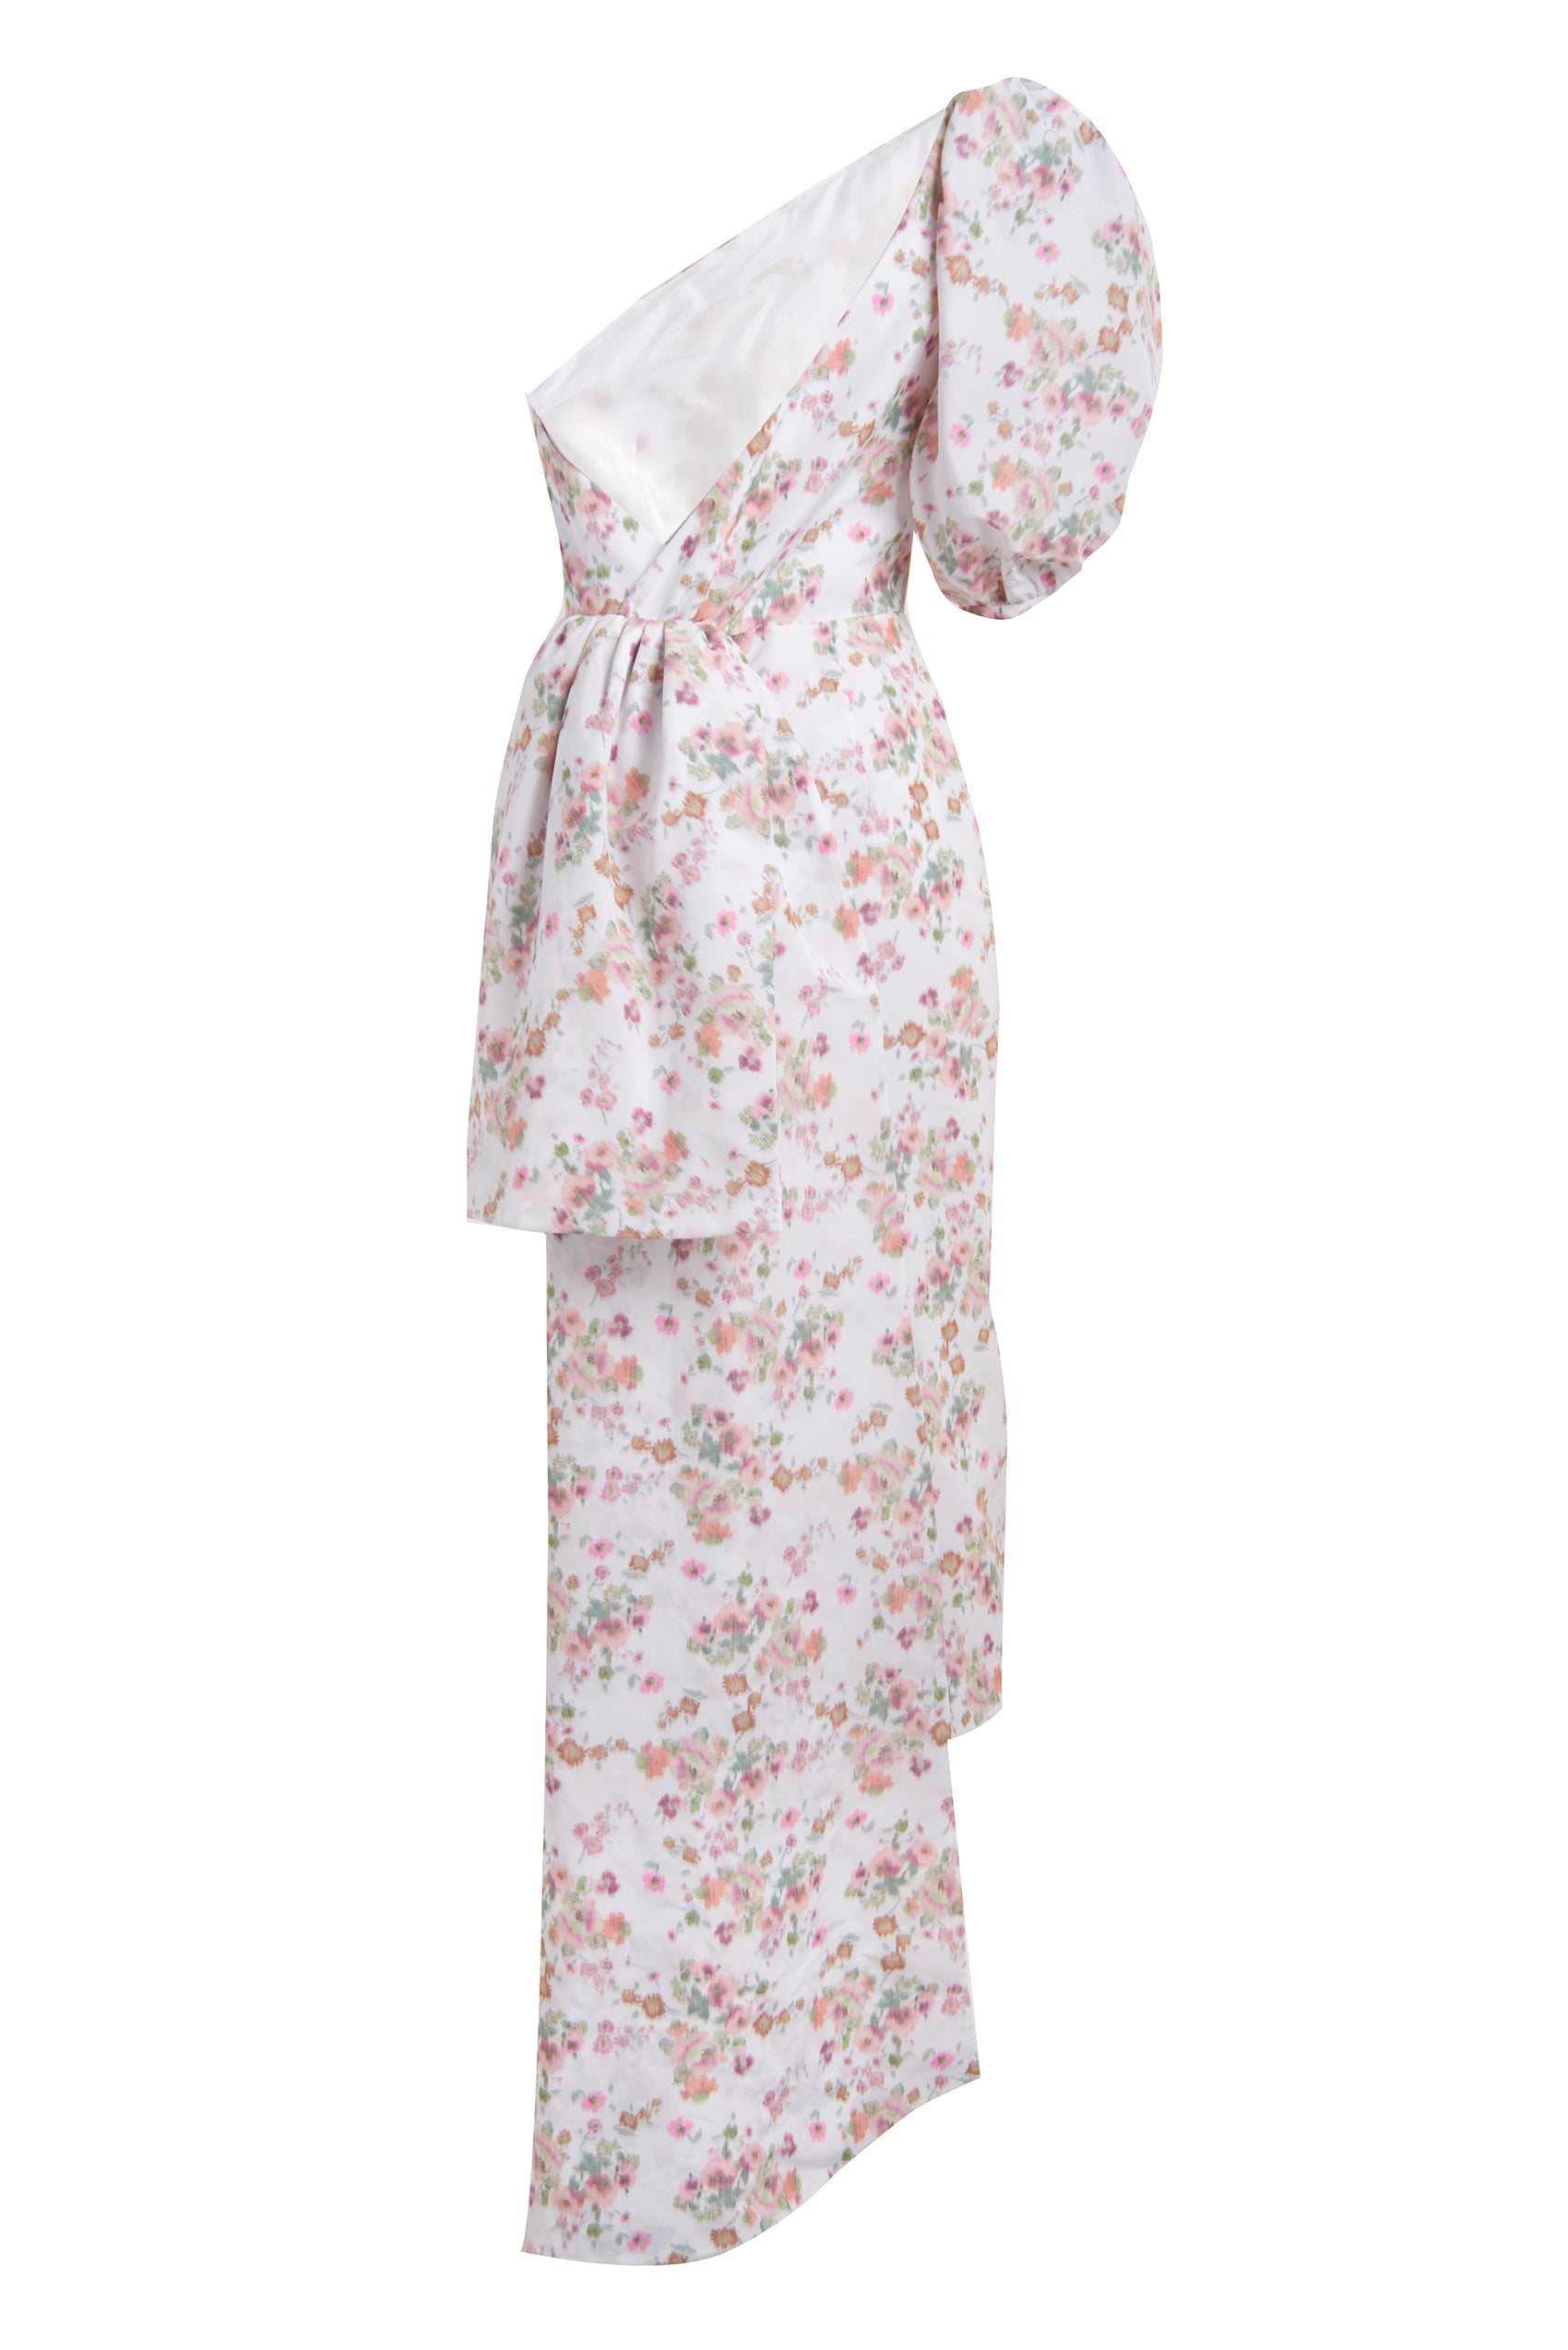 Laurel One-Shoulder White Ikat Floral Dress with Sash Train